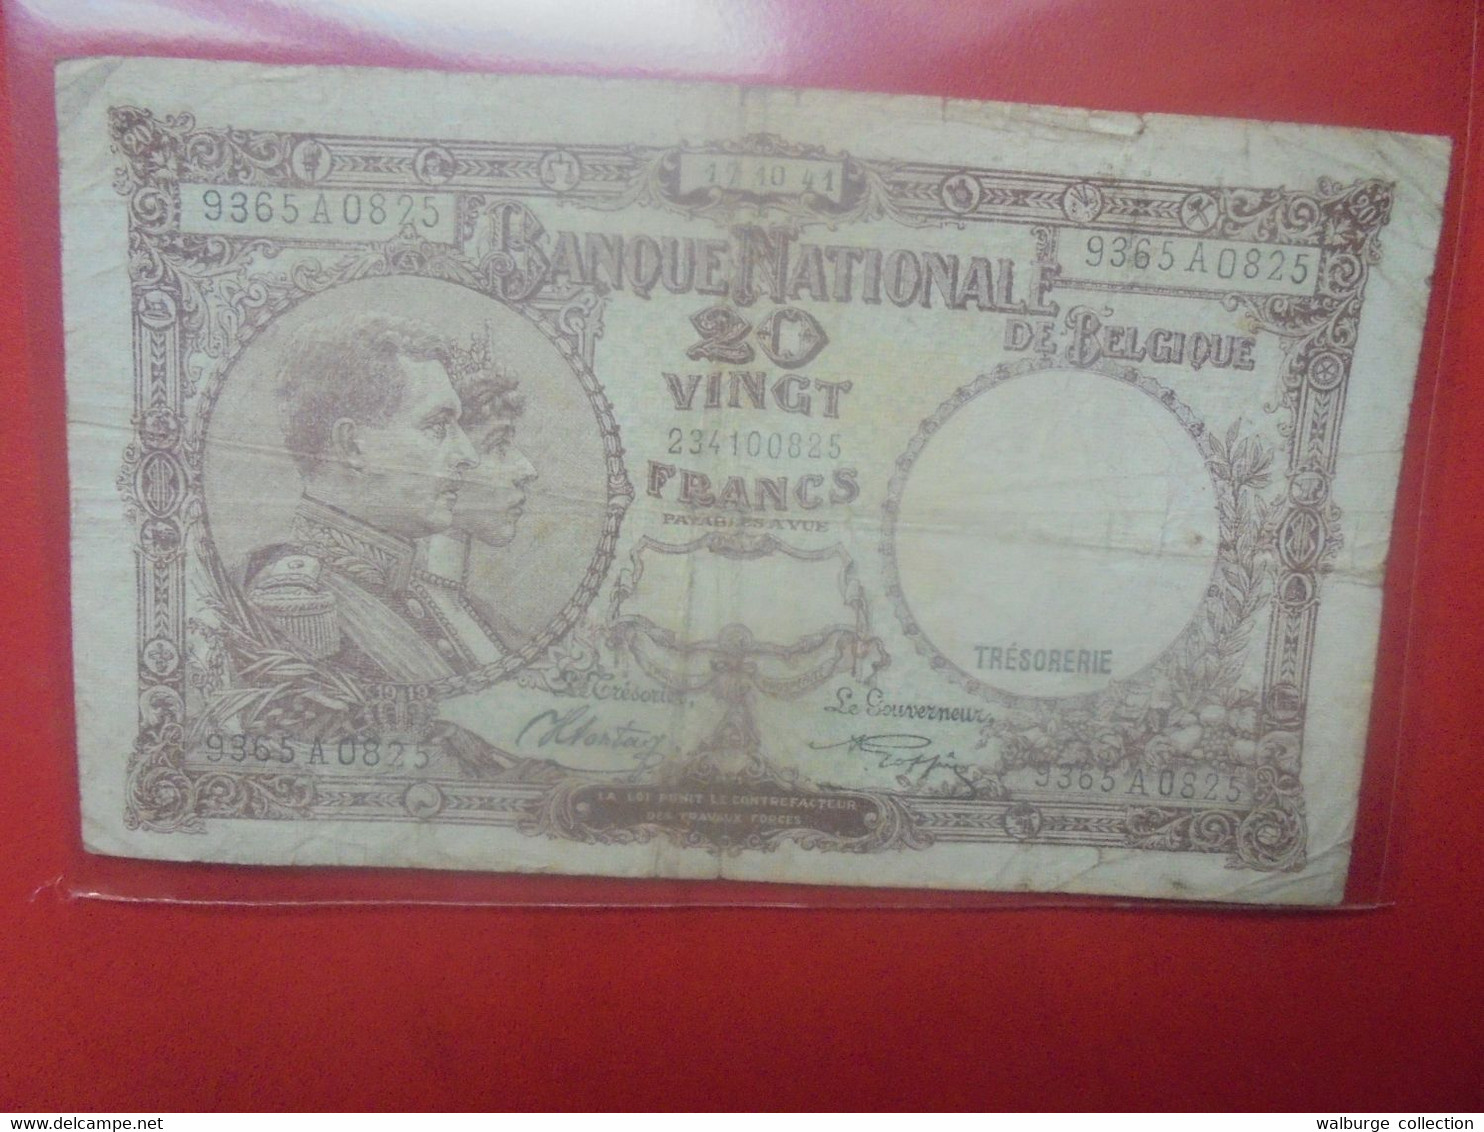 BELGIQUE 20 Francs 1941 Circuler (B.29) - 20 Francos